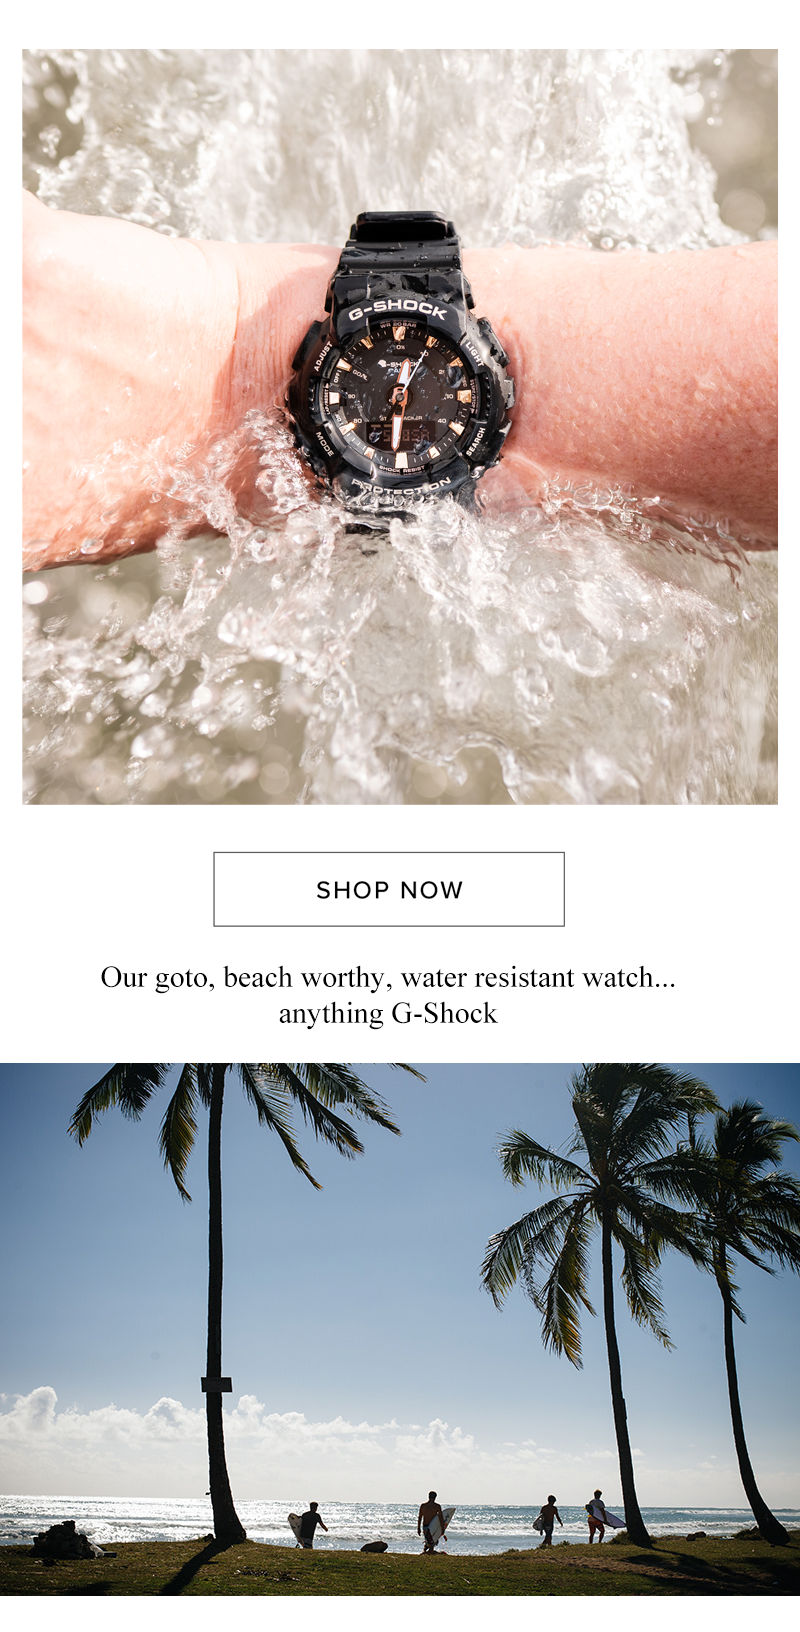 Casio G-Shock Step Tracker beach watch